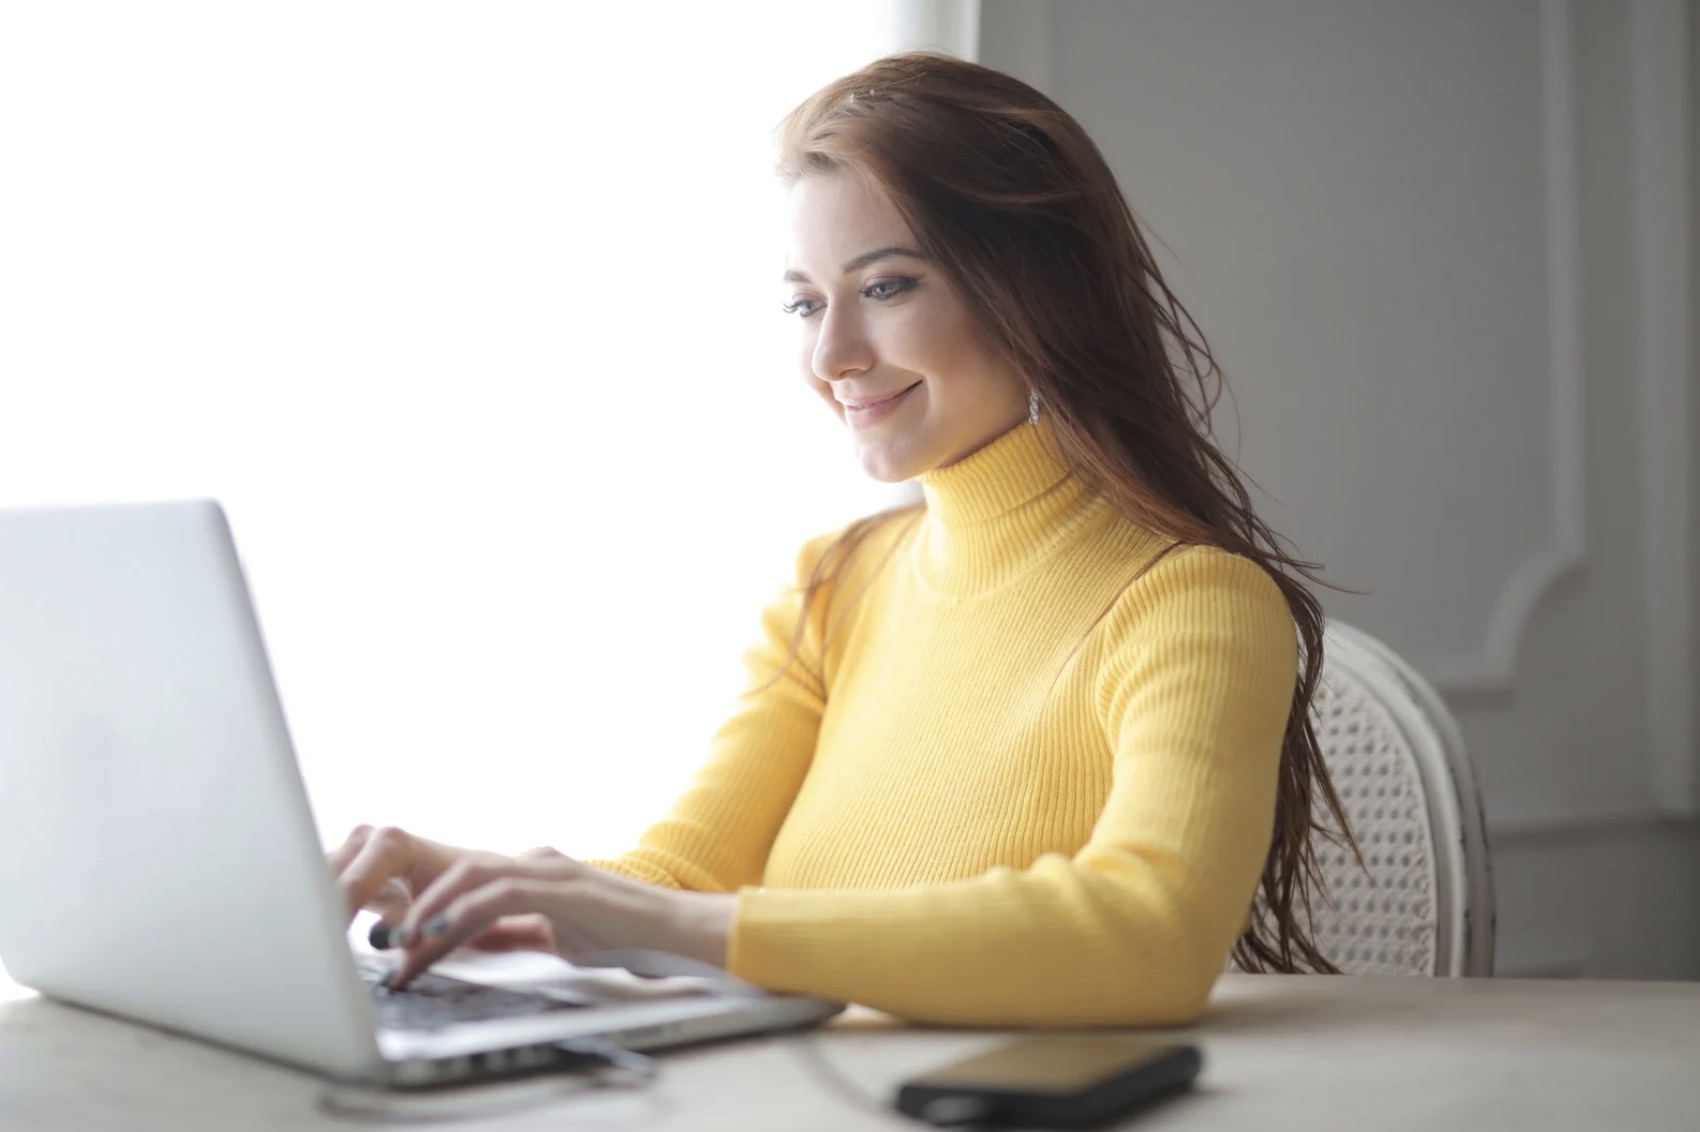 Femme portant un col roulé jaune, en face d’un ordinateur ouvert. Elle est en train de taper quelque chose sur le clavier.